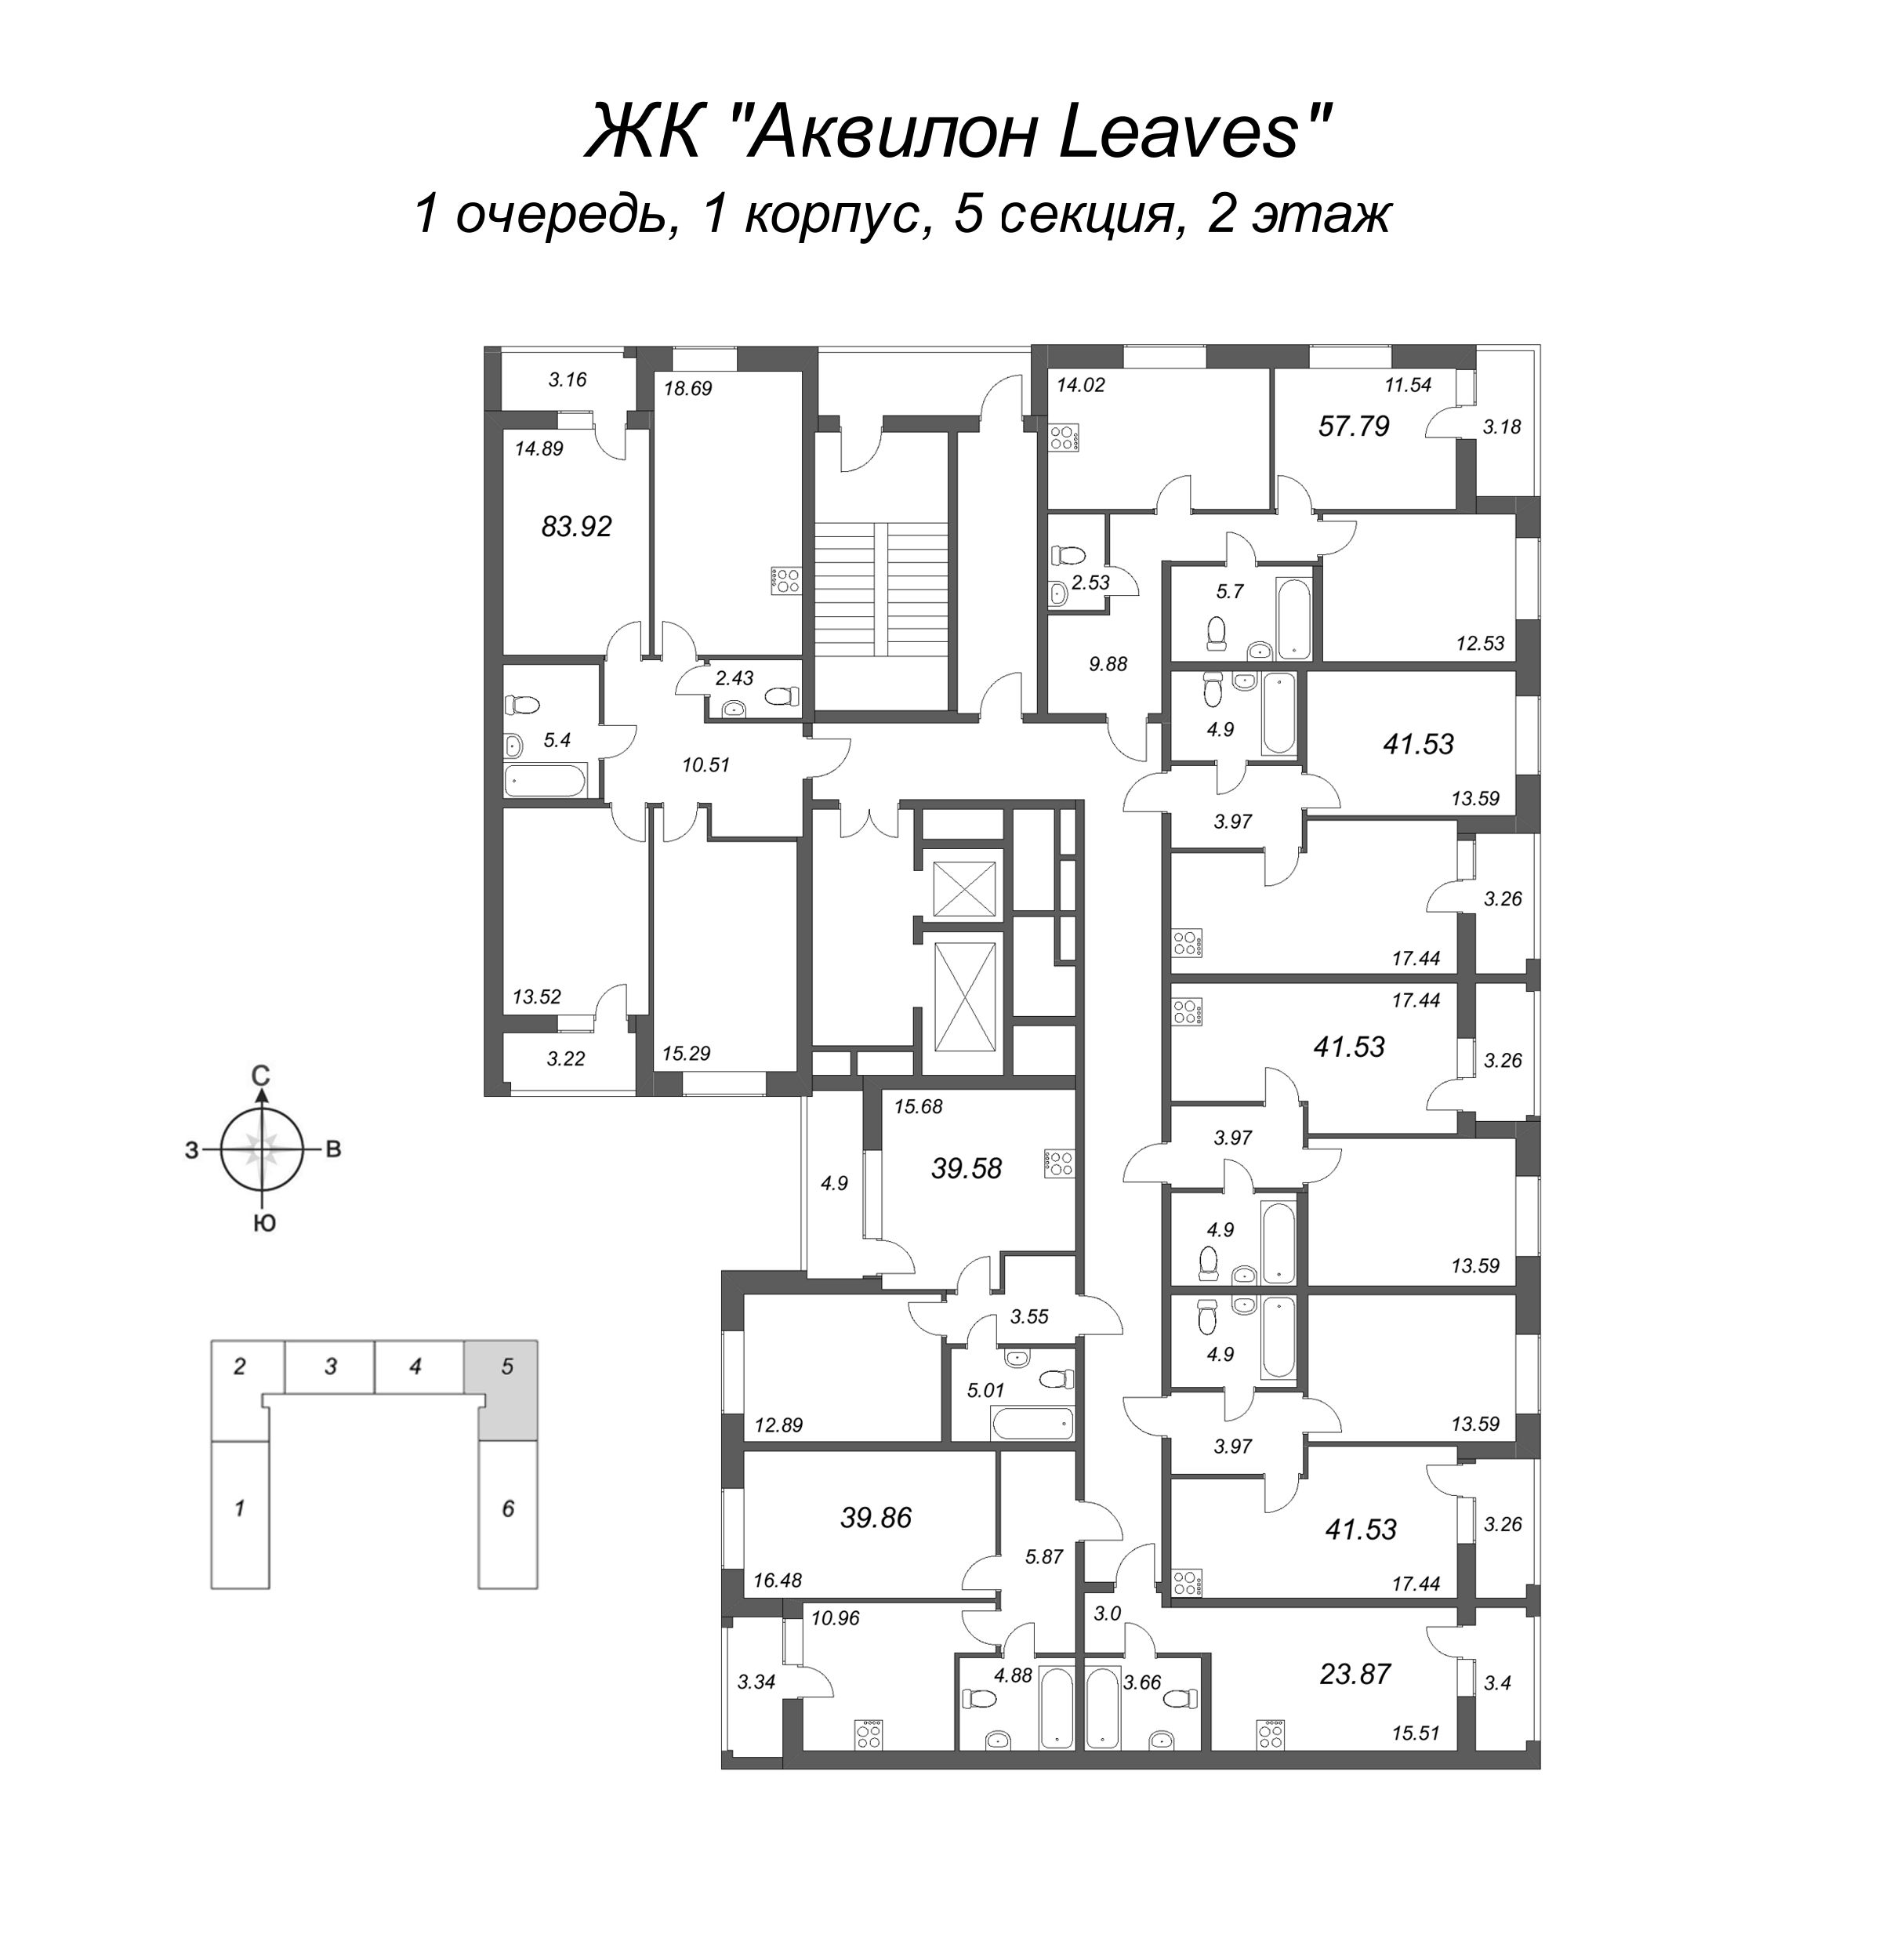 2-комнатная (Евро) квартира, 41.53 м² в ЖК "Аквилон Leaves" - планировка этажа